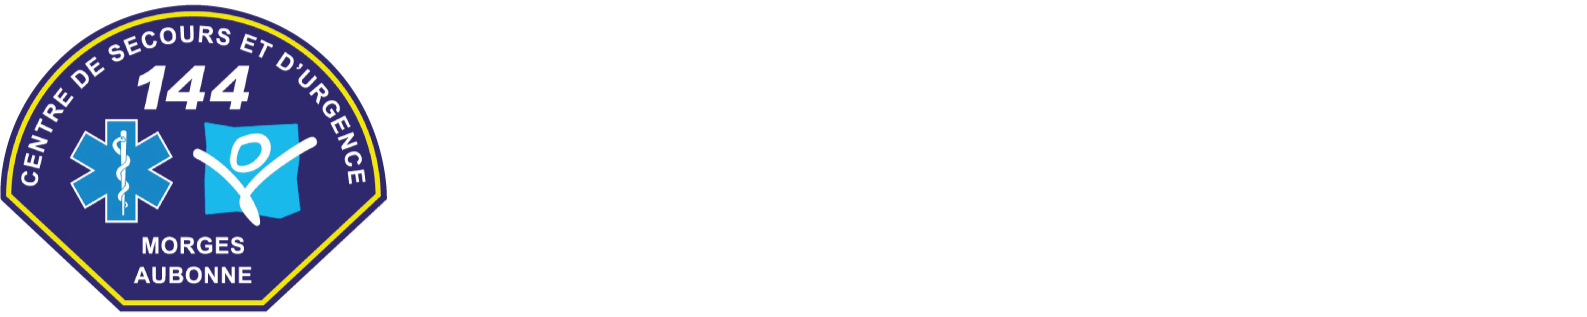 CSU Morges-Aubonne